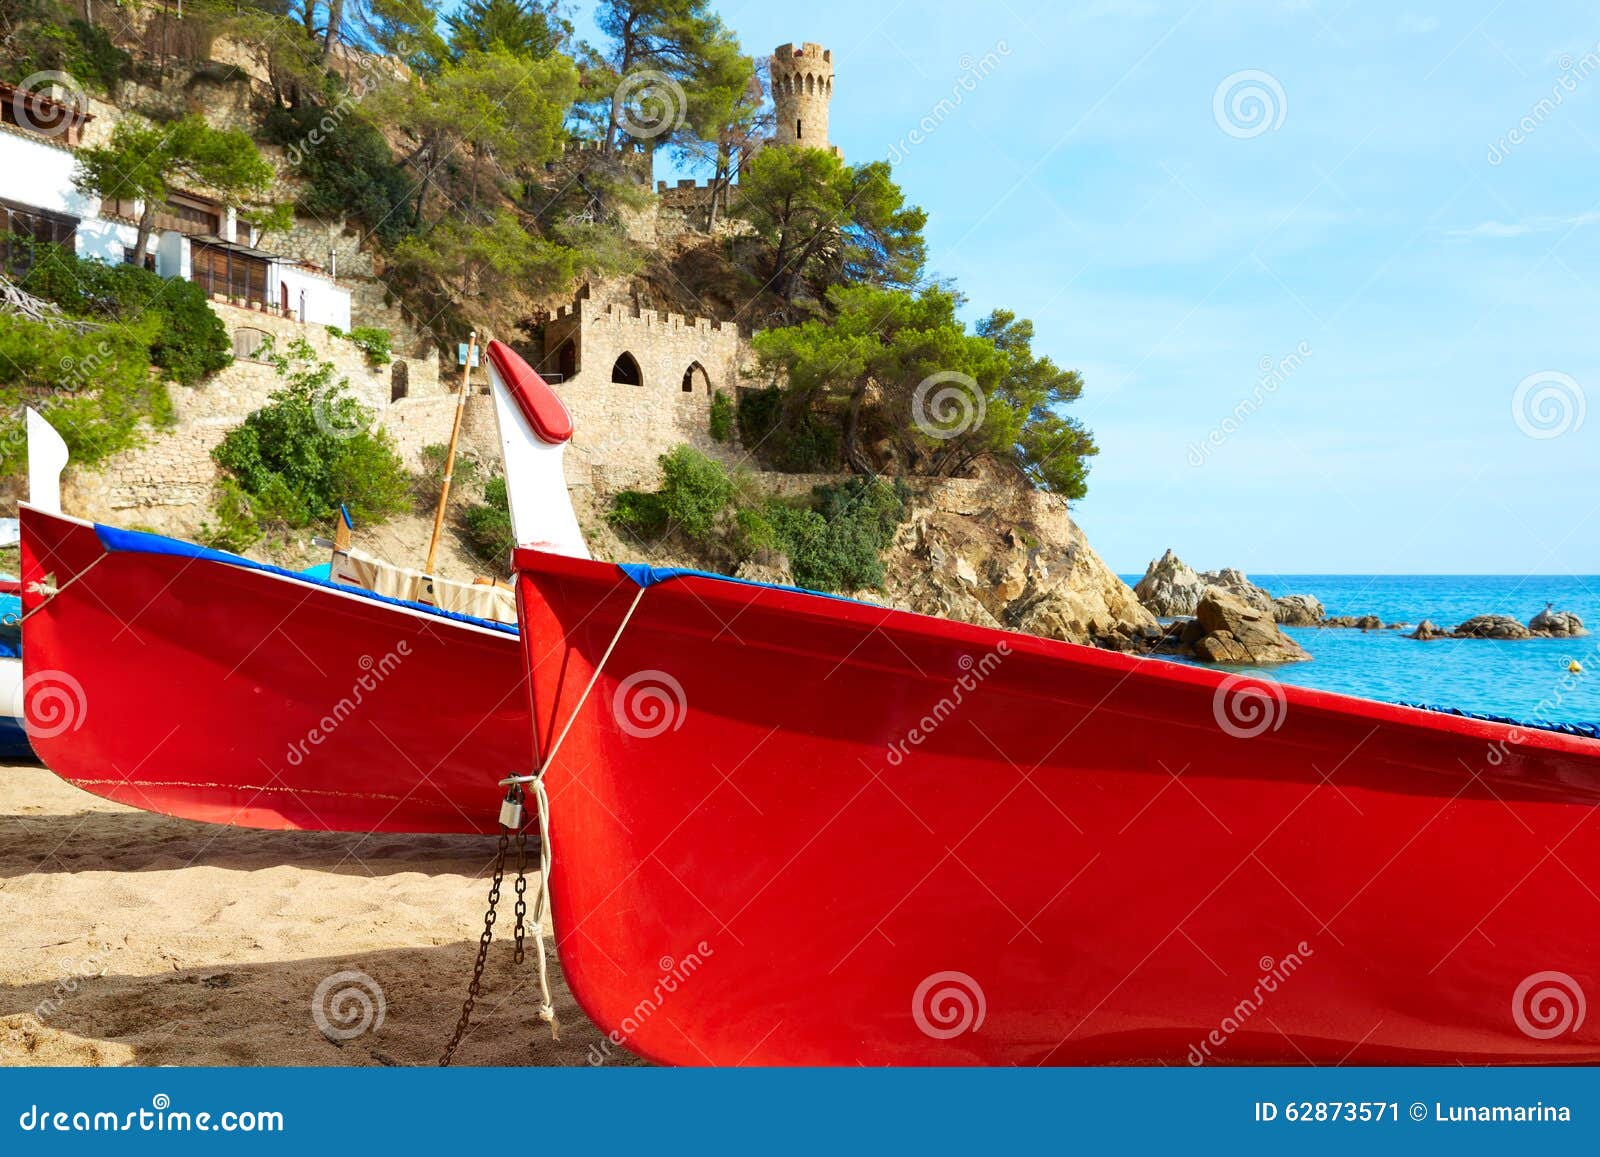 lloret de mar castell plaja at sa caleta beach